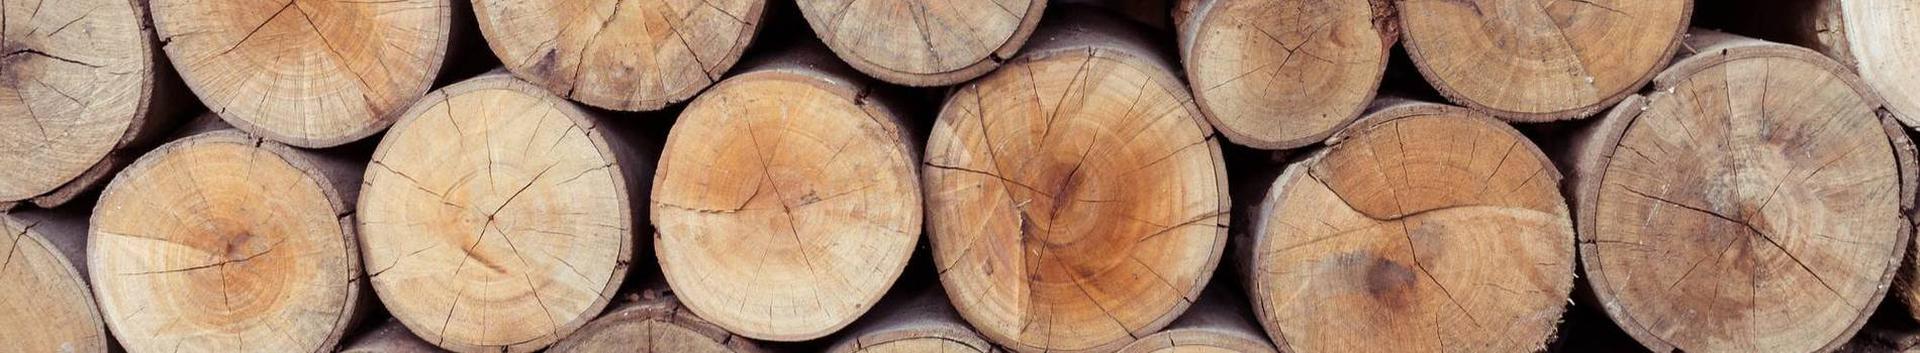 metsatööd, puidu- ja paberitööstus, puidu kokkuost ja müük, üldehitus